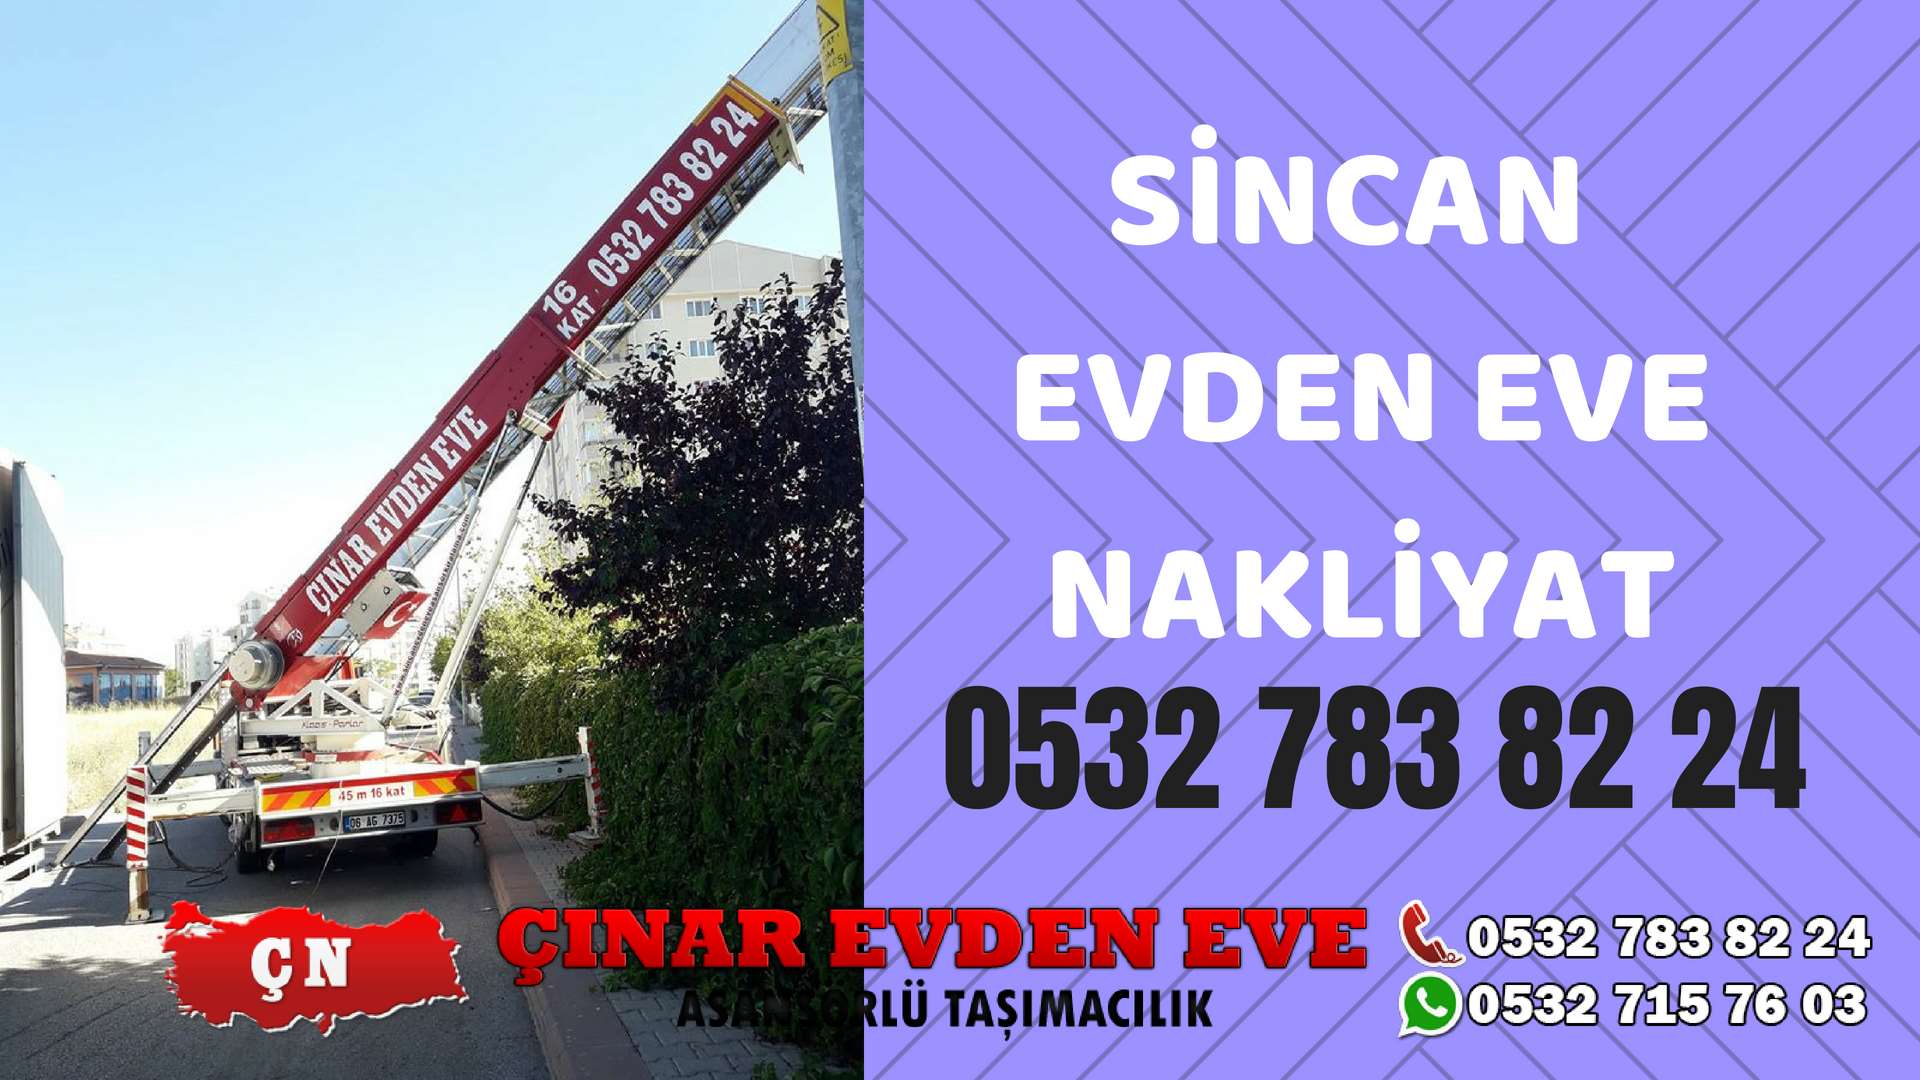 Ankara Yapracık Sincan Evden Eve Nakliyat, Asansörlü Taşıma Çınar Nakliyat Sincan 0532 715 76 03